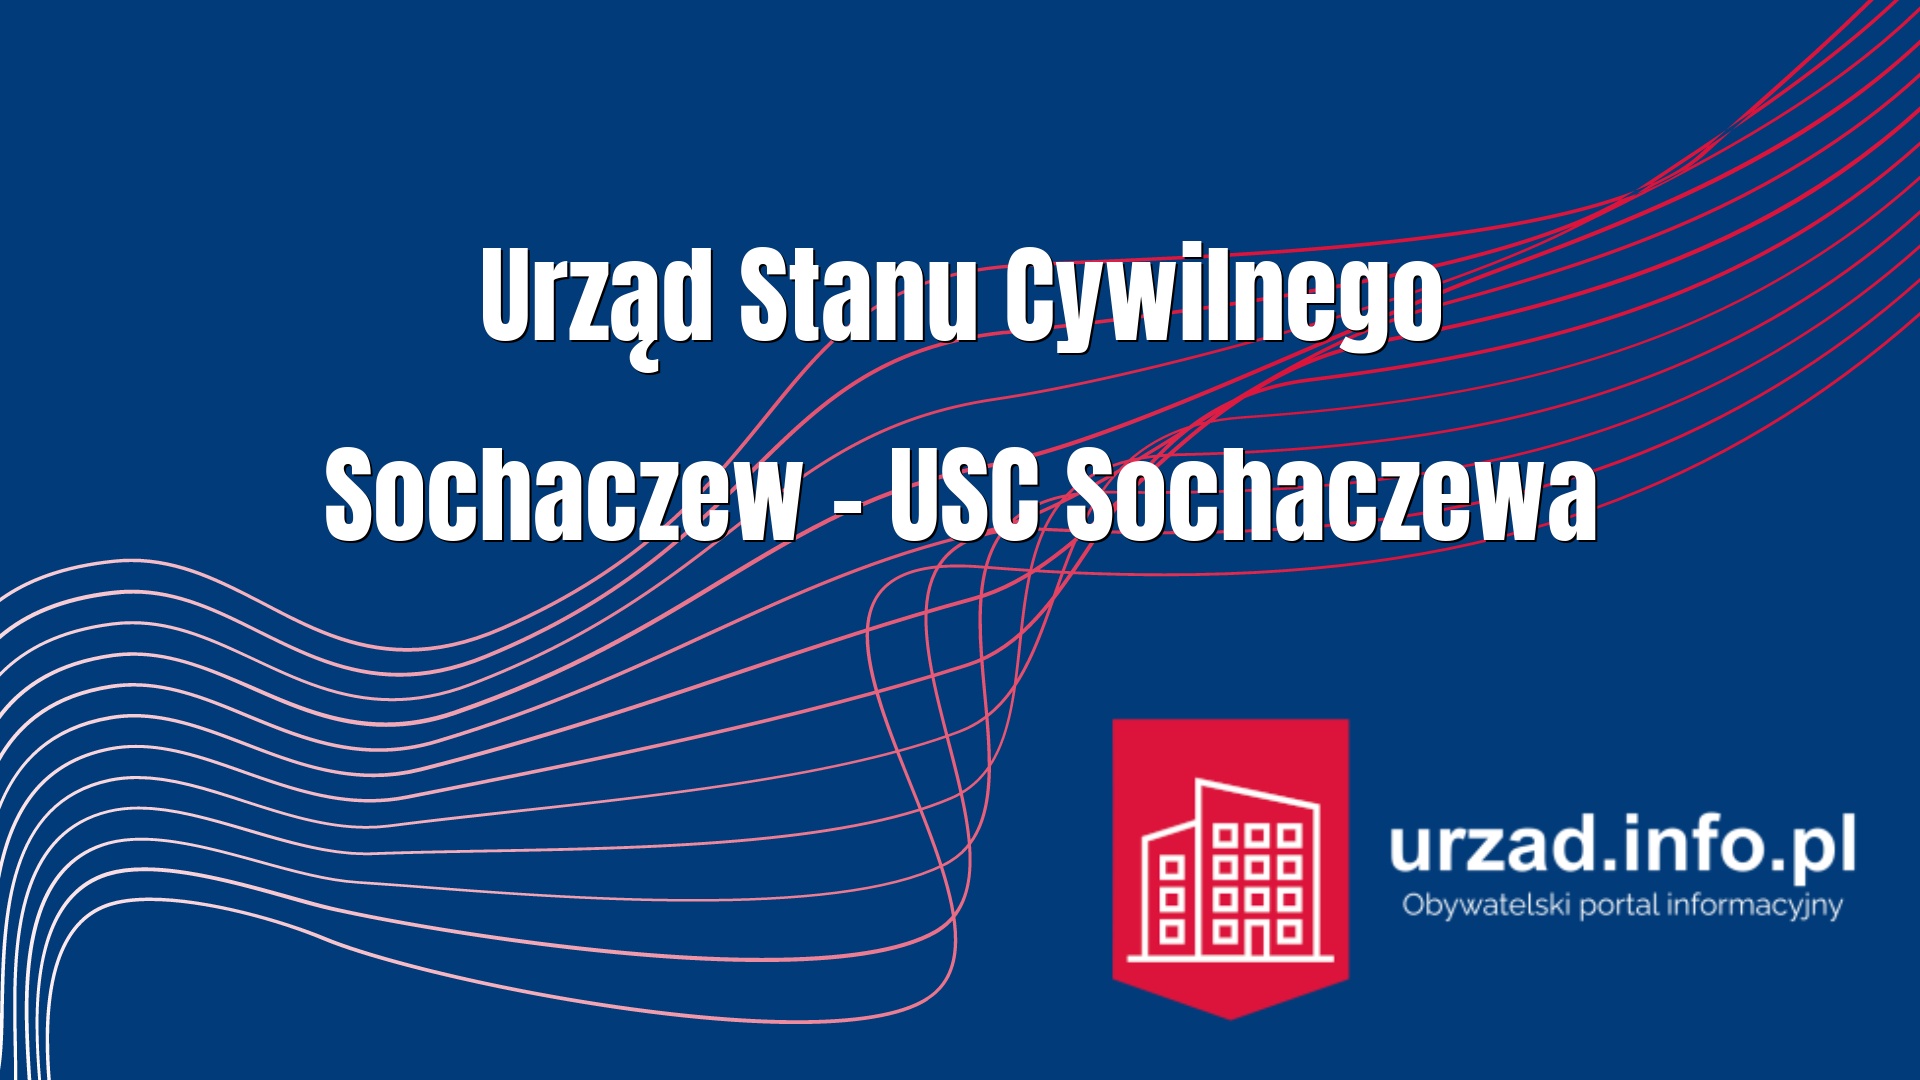 Urząd Stanu Cywilnego Sochaczew – USC Sochaczewa